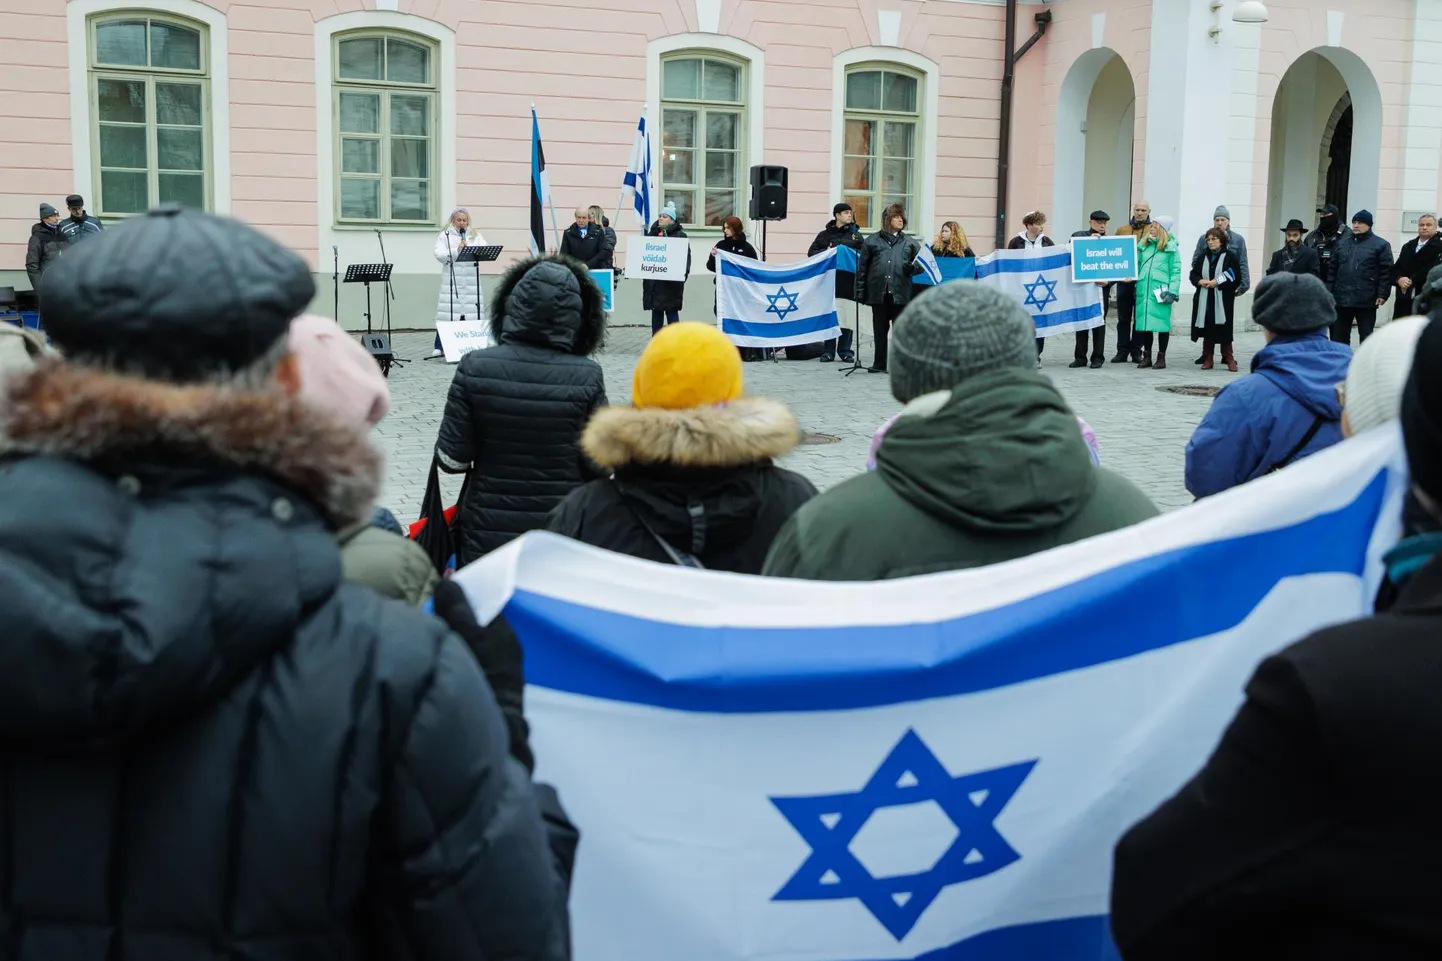 Jeruusalemma Rahvusvahelise Kristliku Suursaatkonna Eesti osakond ehk Iisraeli keskus ning mitmed ühingud korraldasid pühapäeval Toompeal Iisraeli toetuseks meeleavalduse.